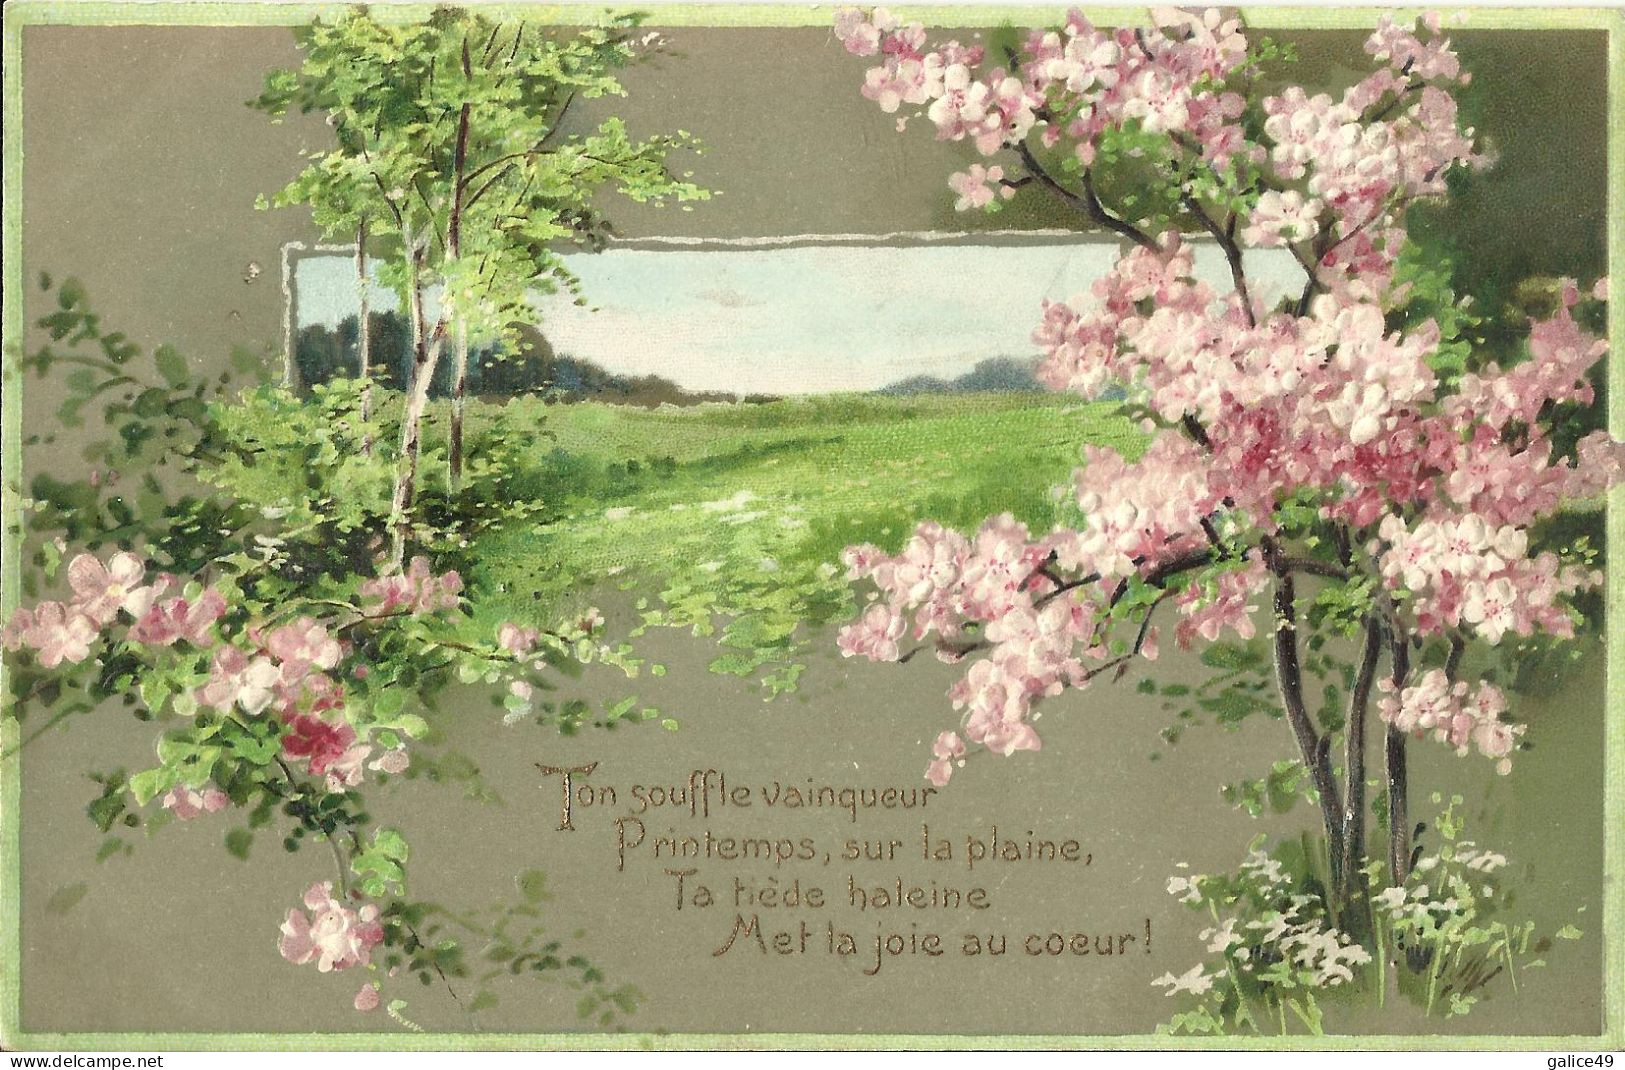 4662 Belle CPA Gaufrée - Fleurs De Pommier Finement Gaufrées - Paysage Printanier - Bomen